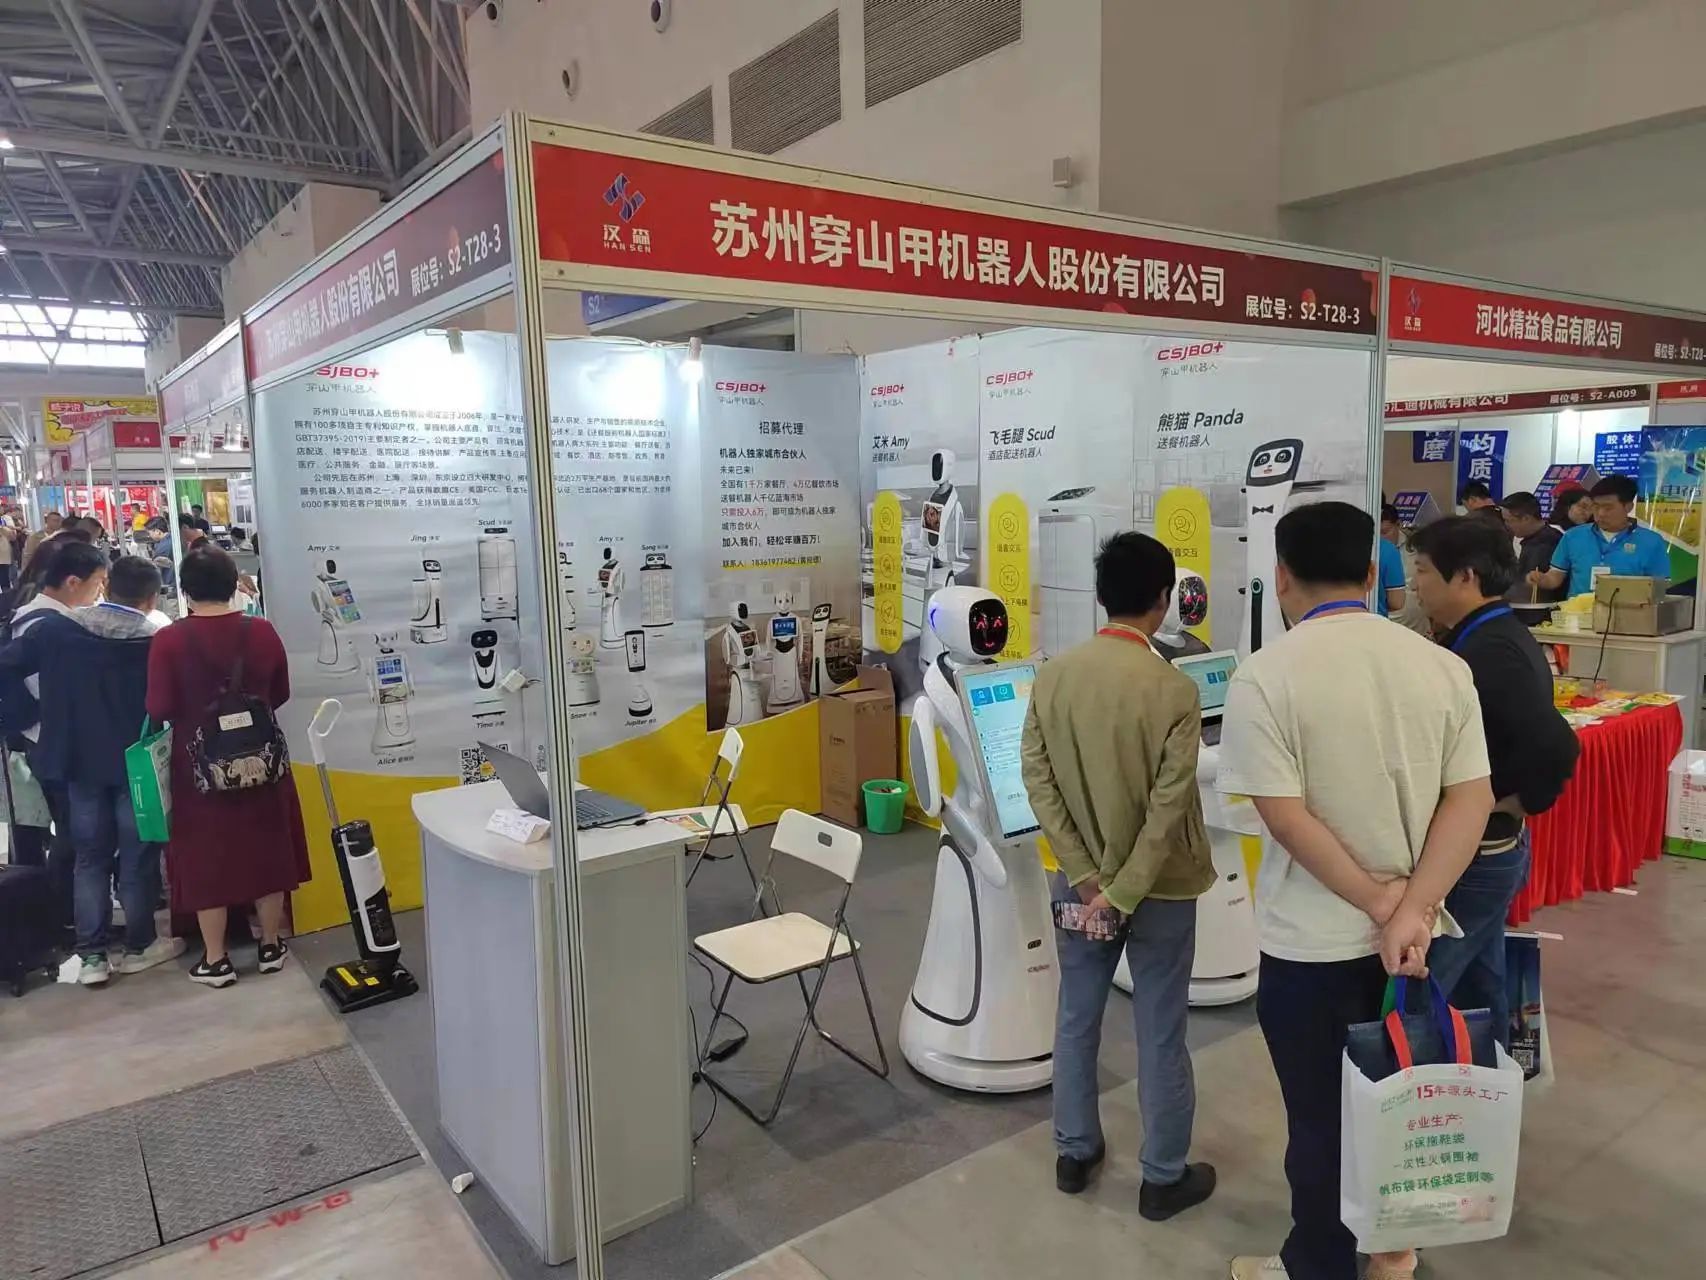 רובוט פנגולין הופיע ב"תערוכת מרכיבי הסיר החמים הבינלאומית העשירית של צ'ונגצ'ינג"